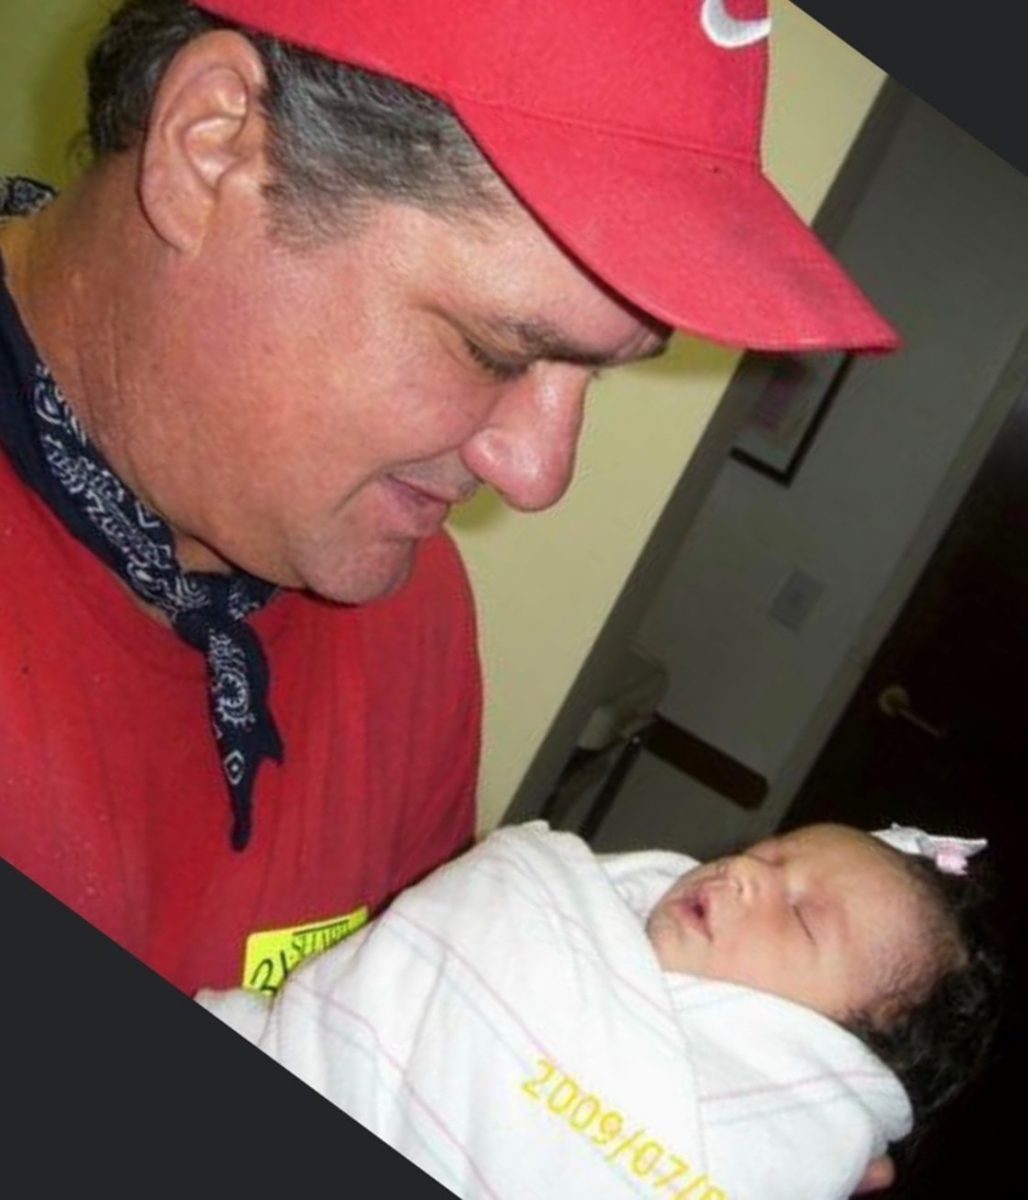 revistapazes.com - Grávida vê pai falecido beijando seu bebê no ultrassom e imagem viraliza